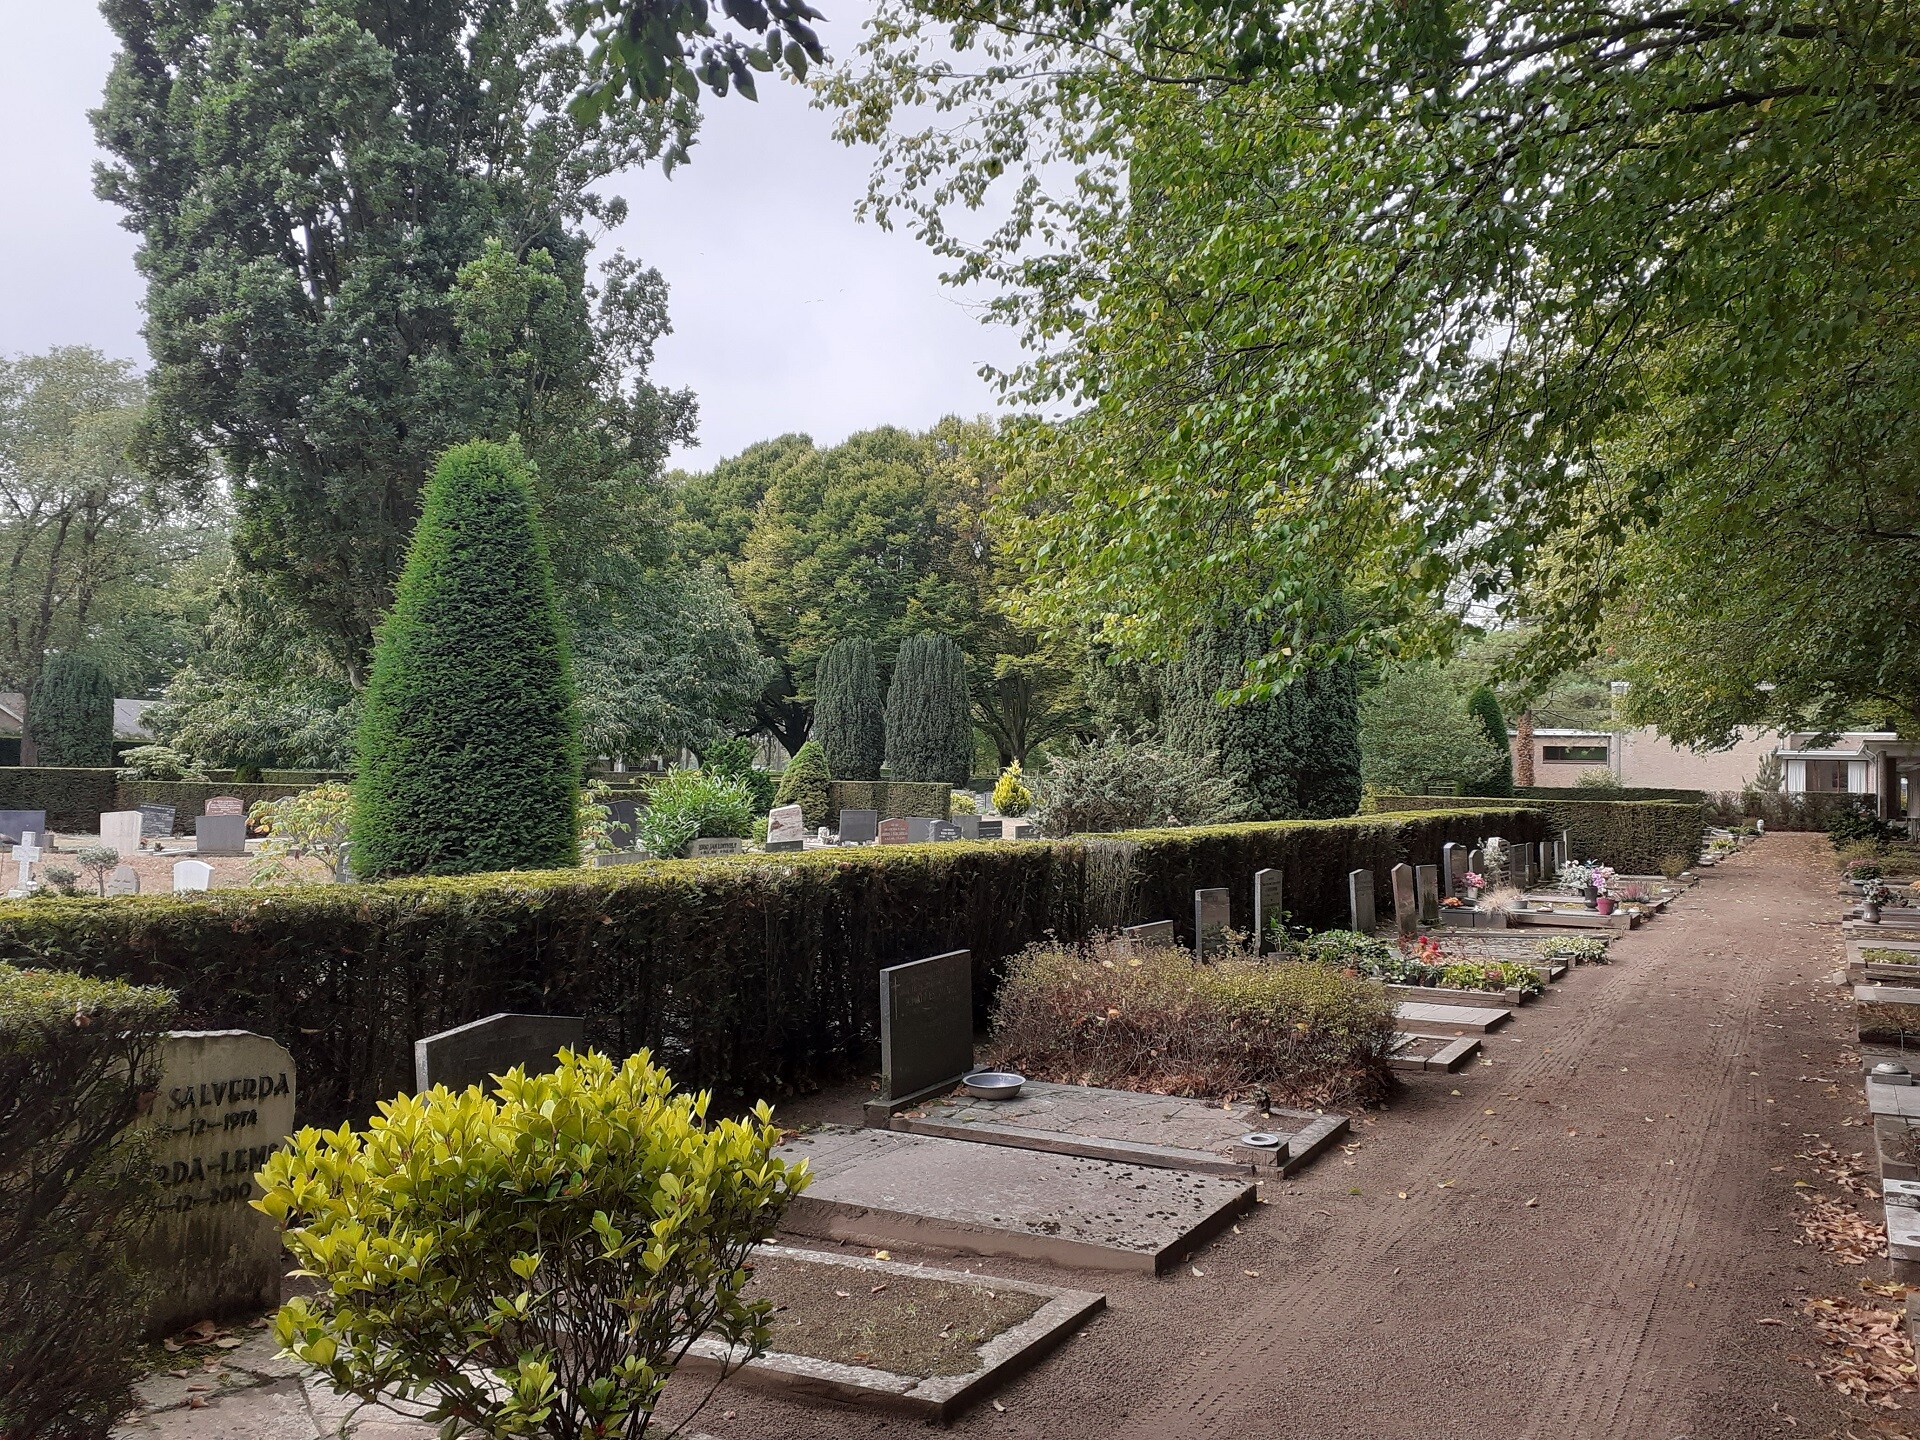 Begraafplaats de Ooster Zutphen Oosterbegraafplaats begraven begrafenis afscheid grafrust